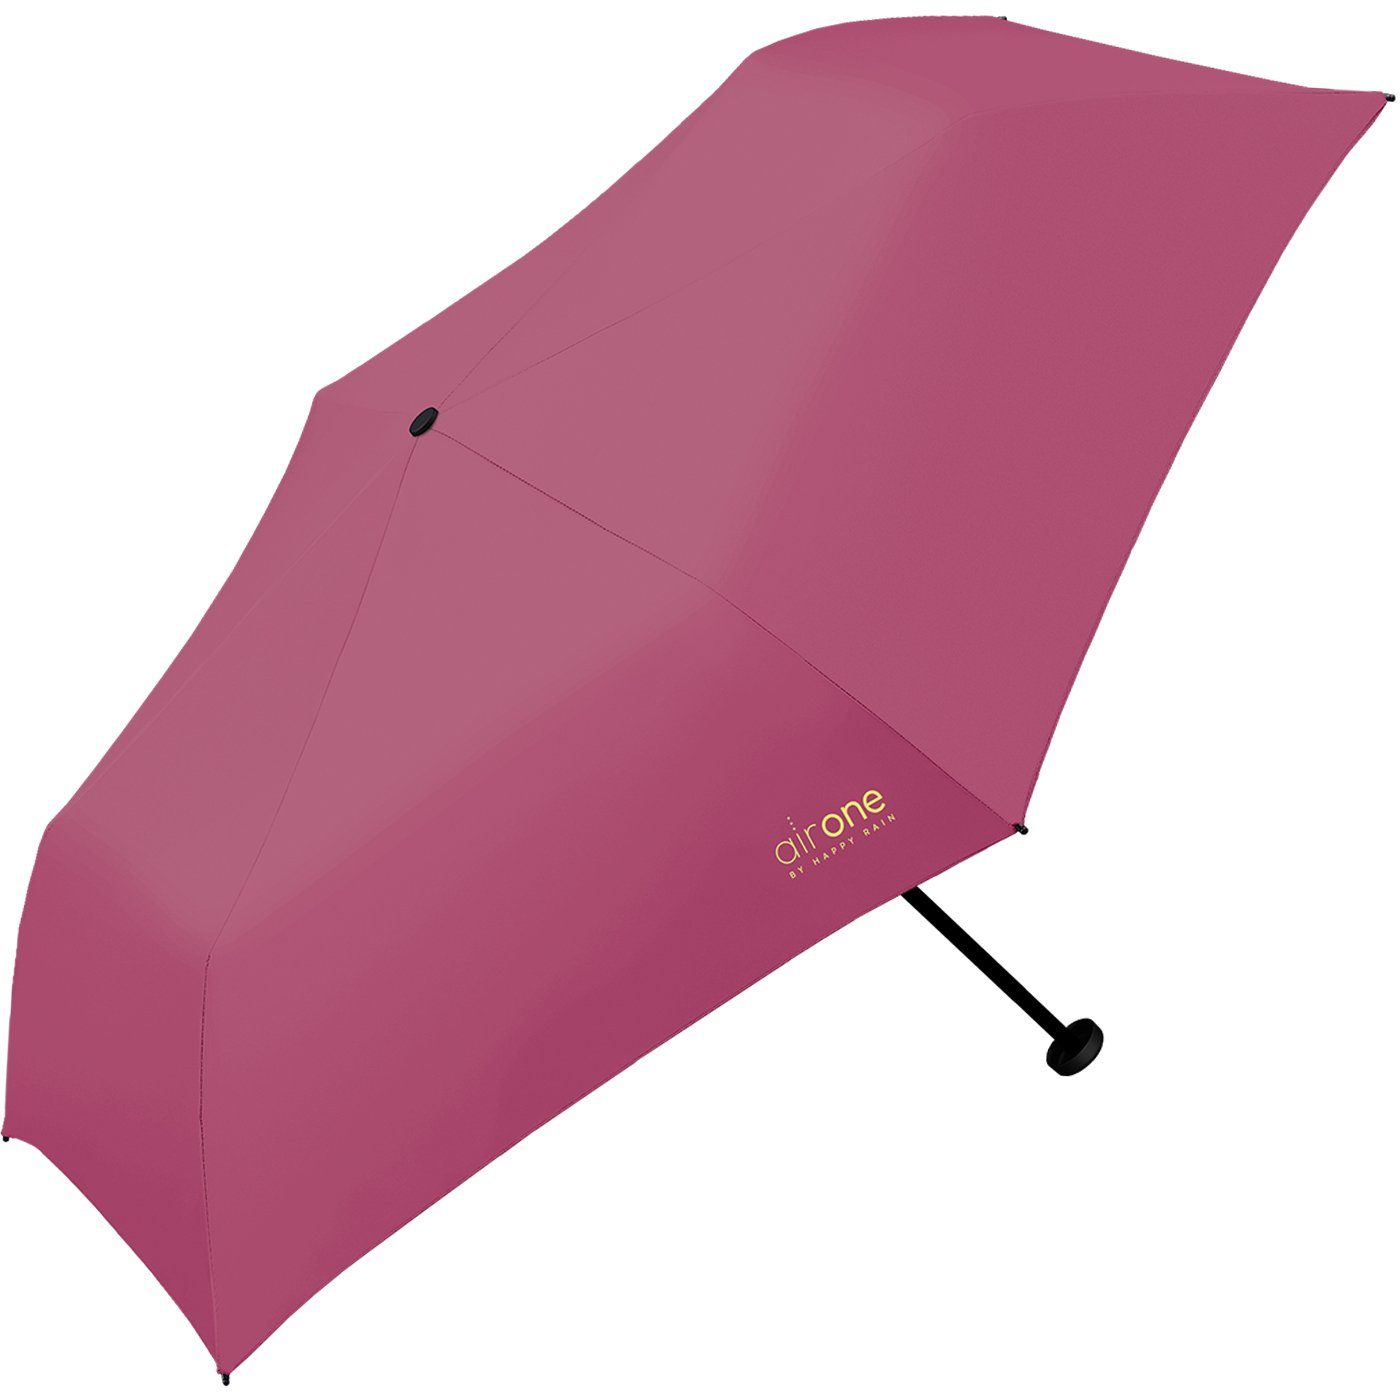 HAPPY Air Minischirm RAIN - für One Untewegs Gramm 99 superleicht, perfekt Taschenregenschirm Mini-Schirm pink - leichtester